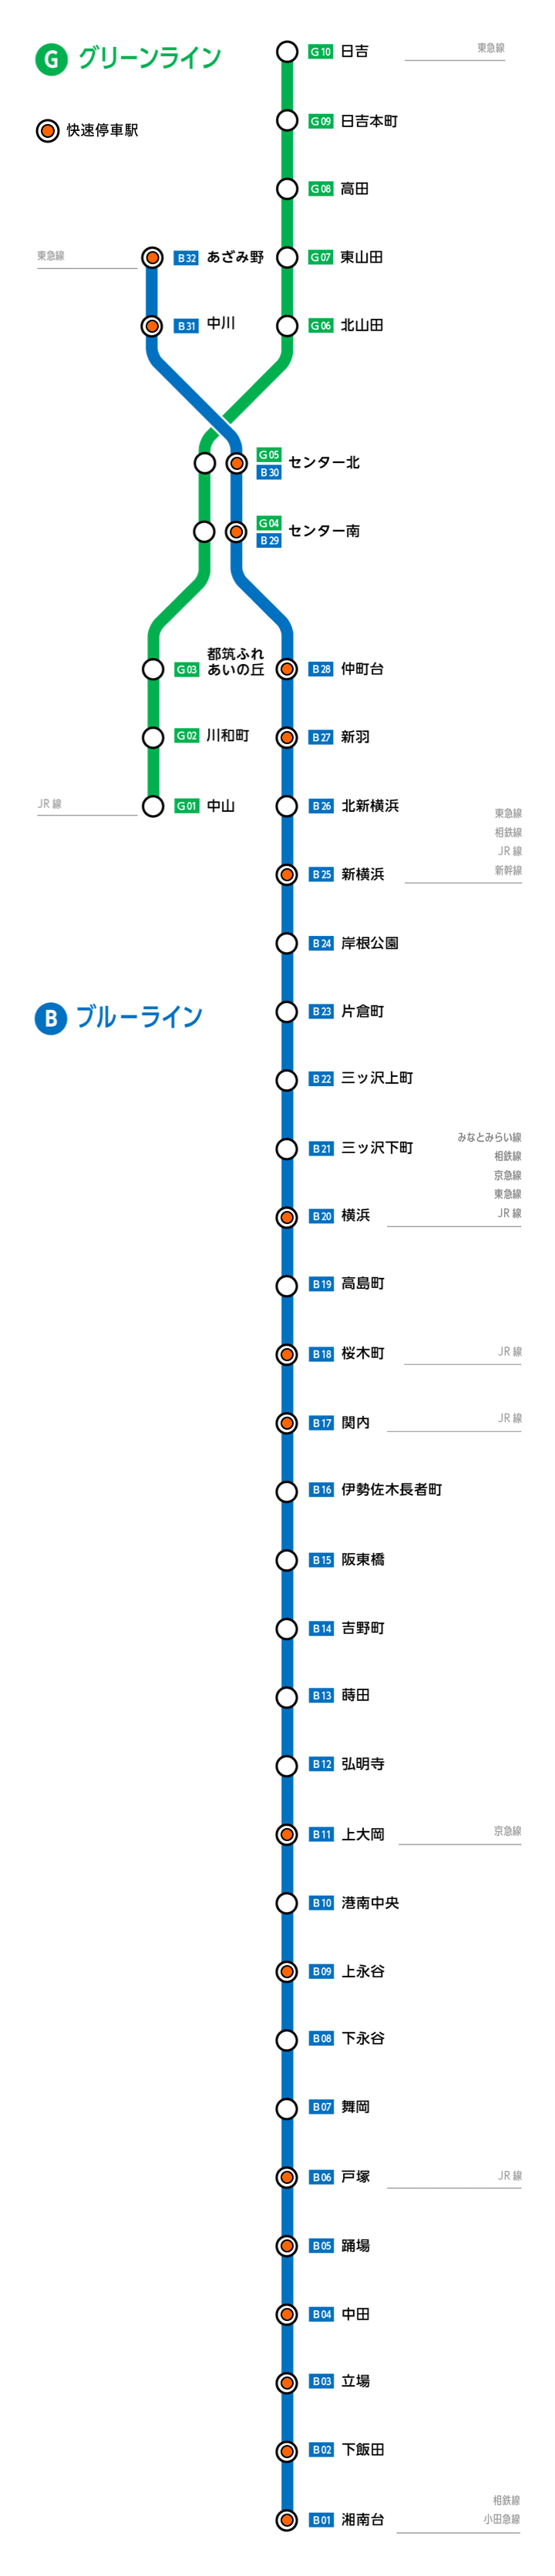 バス 路線図 横浜 Htfyl